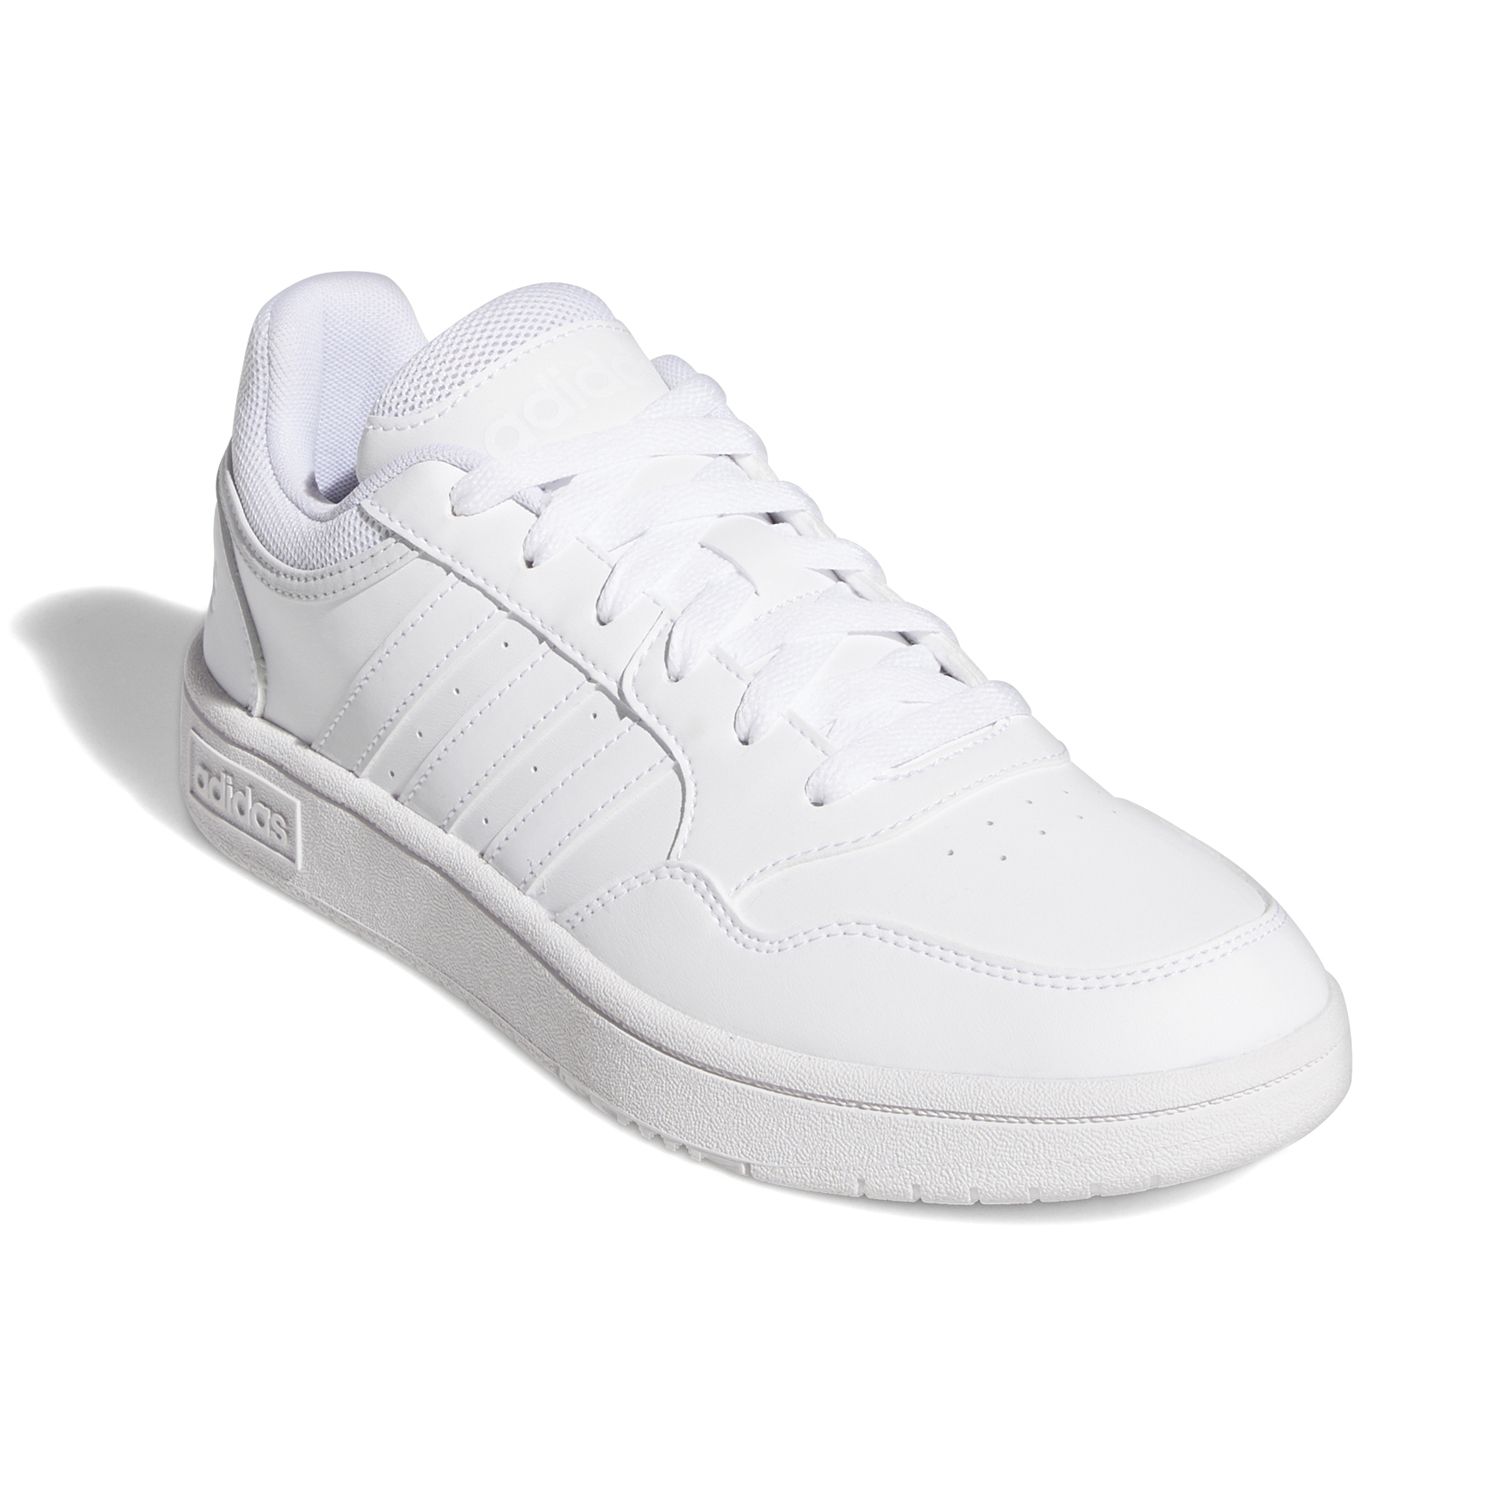 adidas white sneakers women